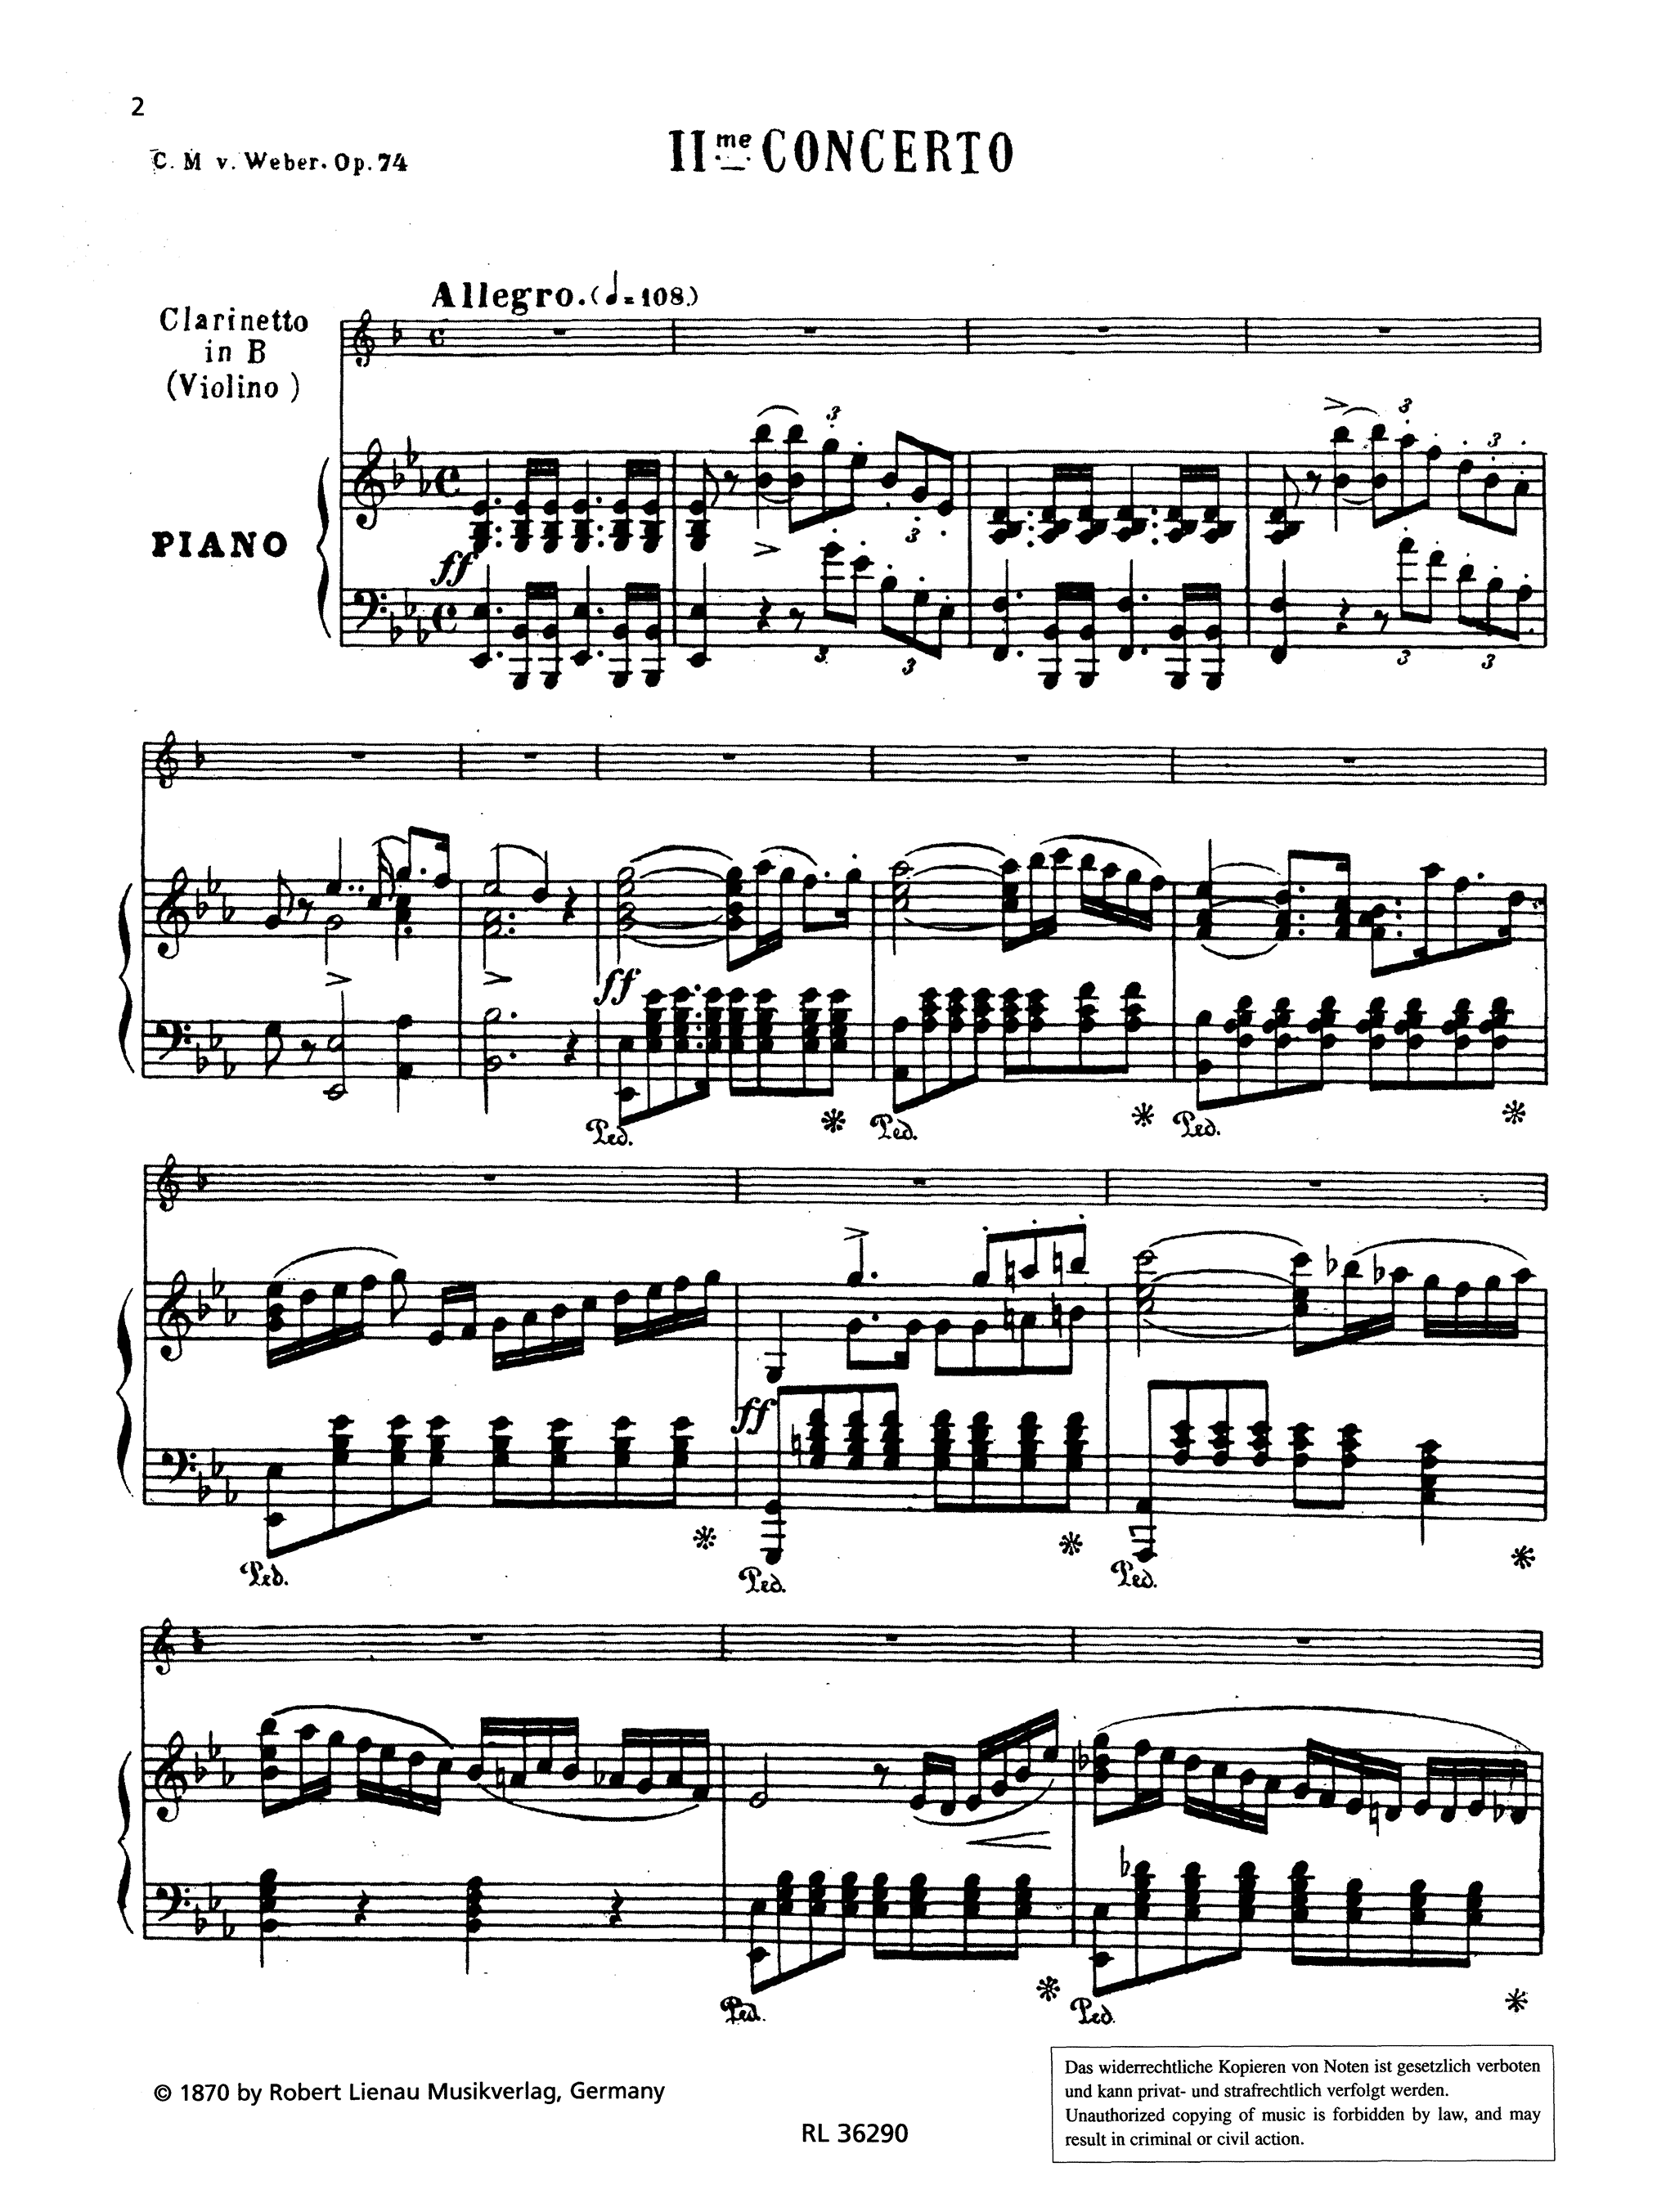 Clarinet Concerto No. 2, Op. 74 - Movement 1